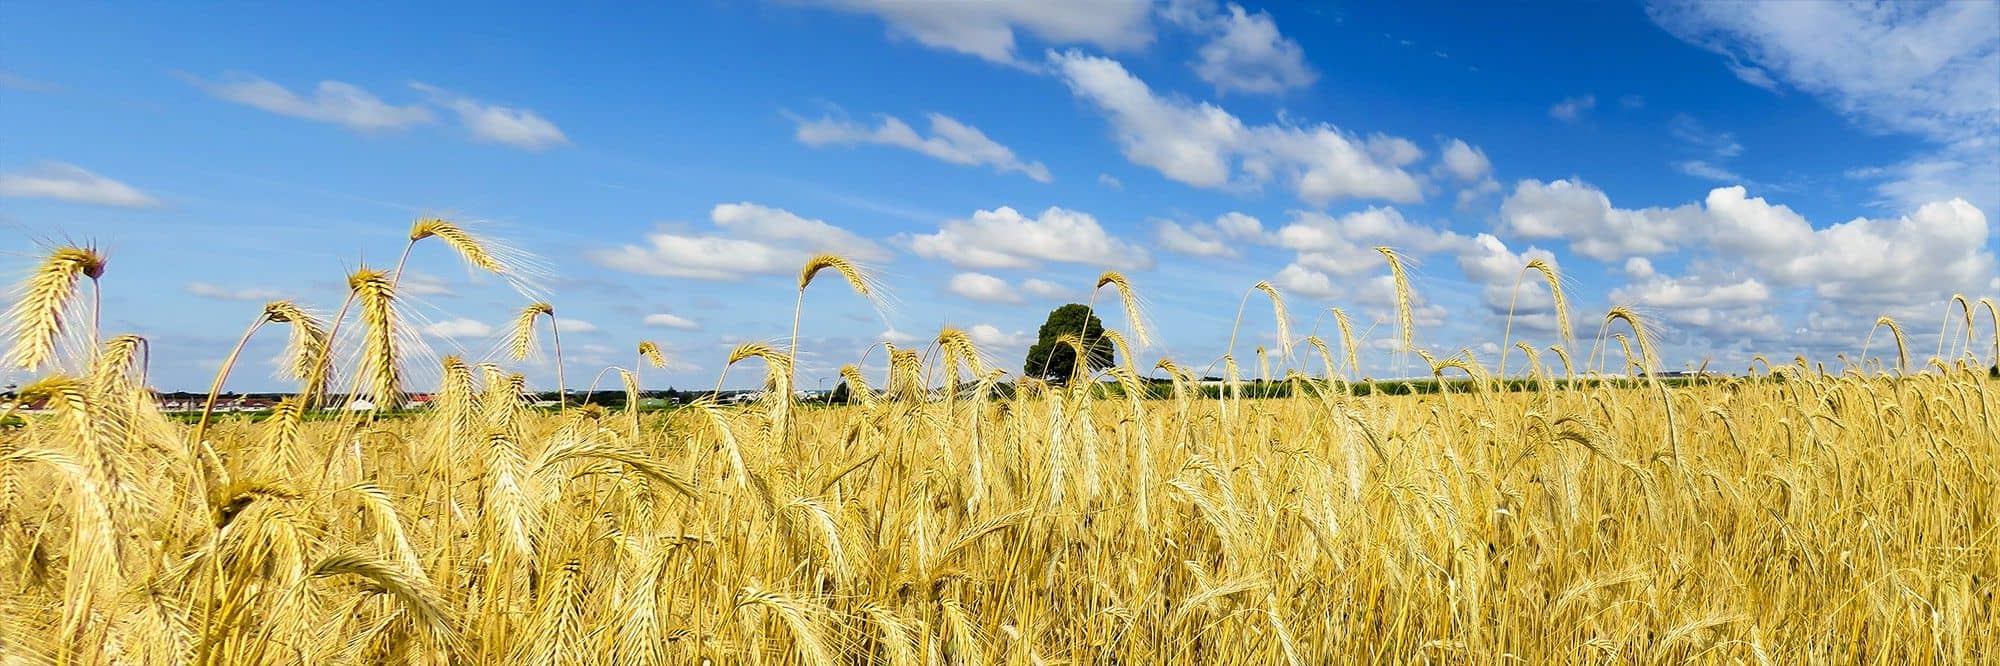 wheat_field